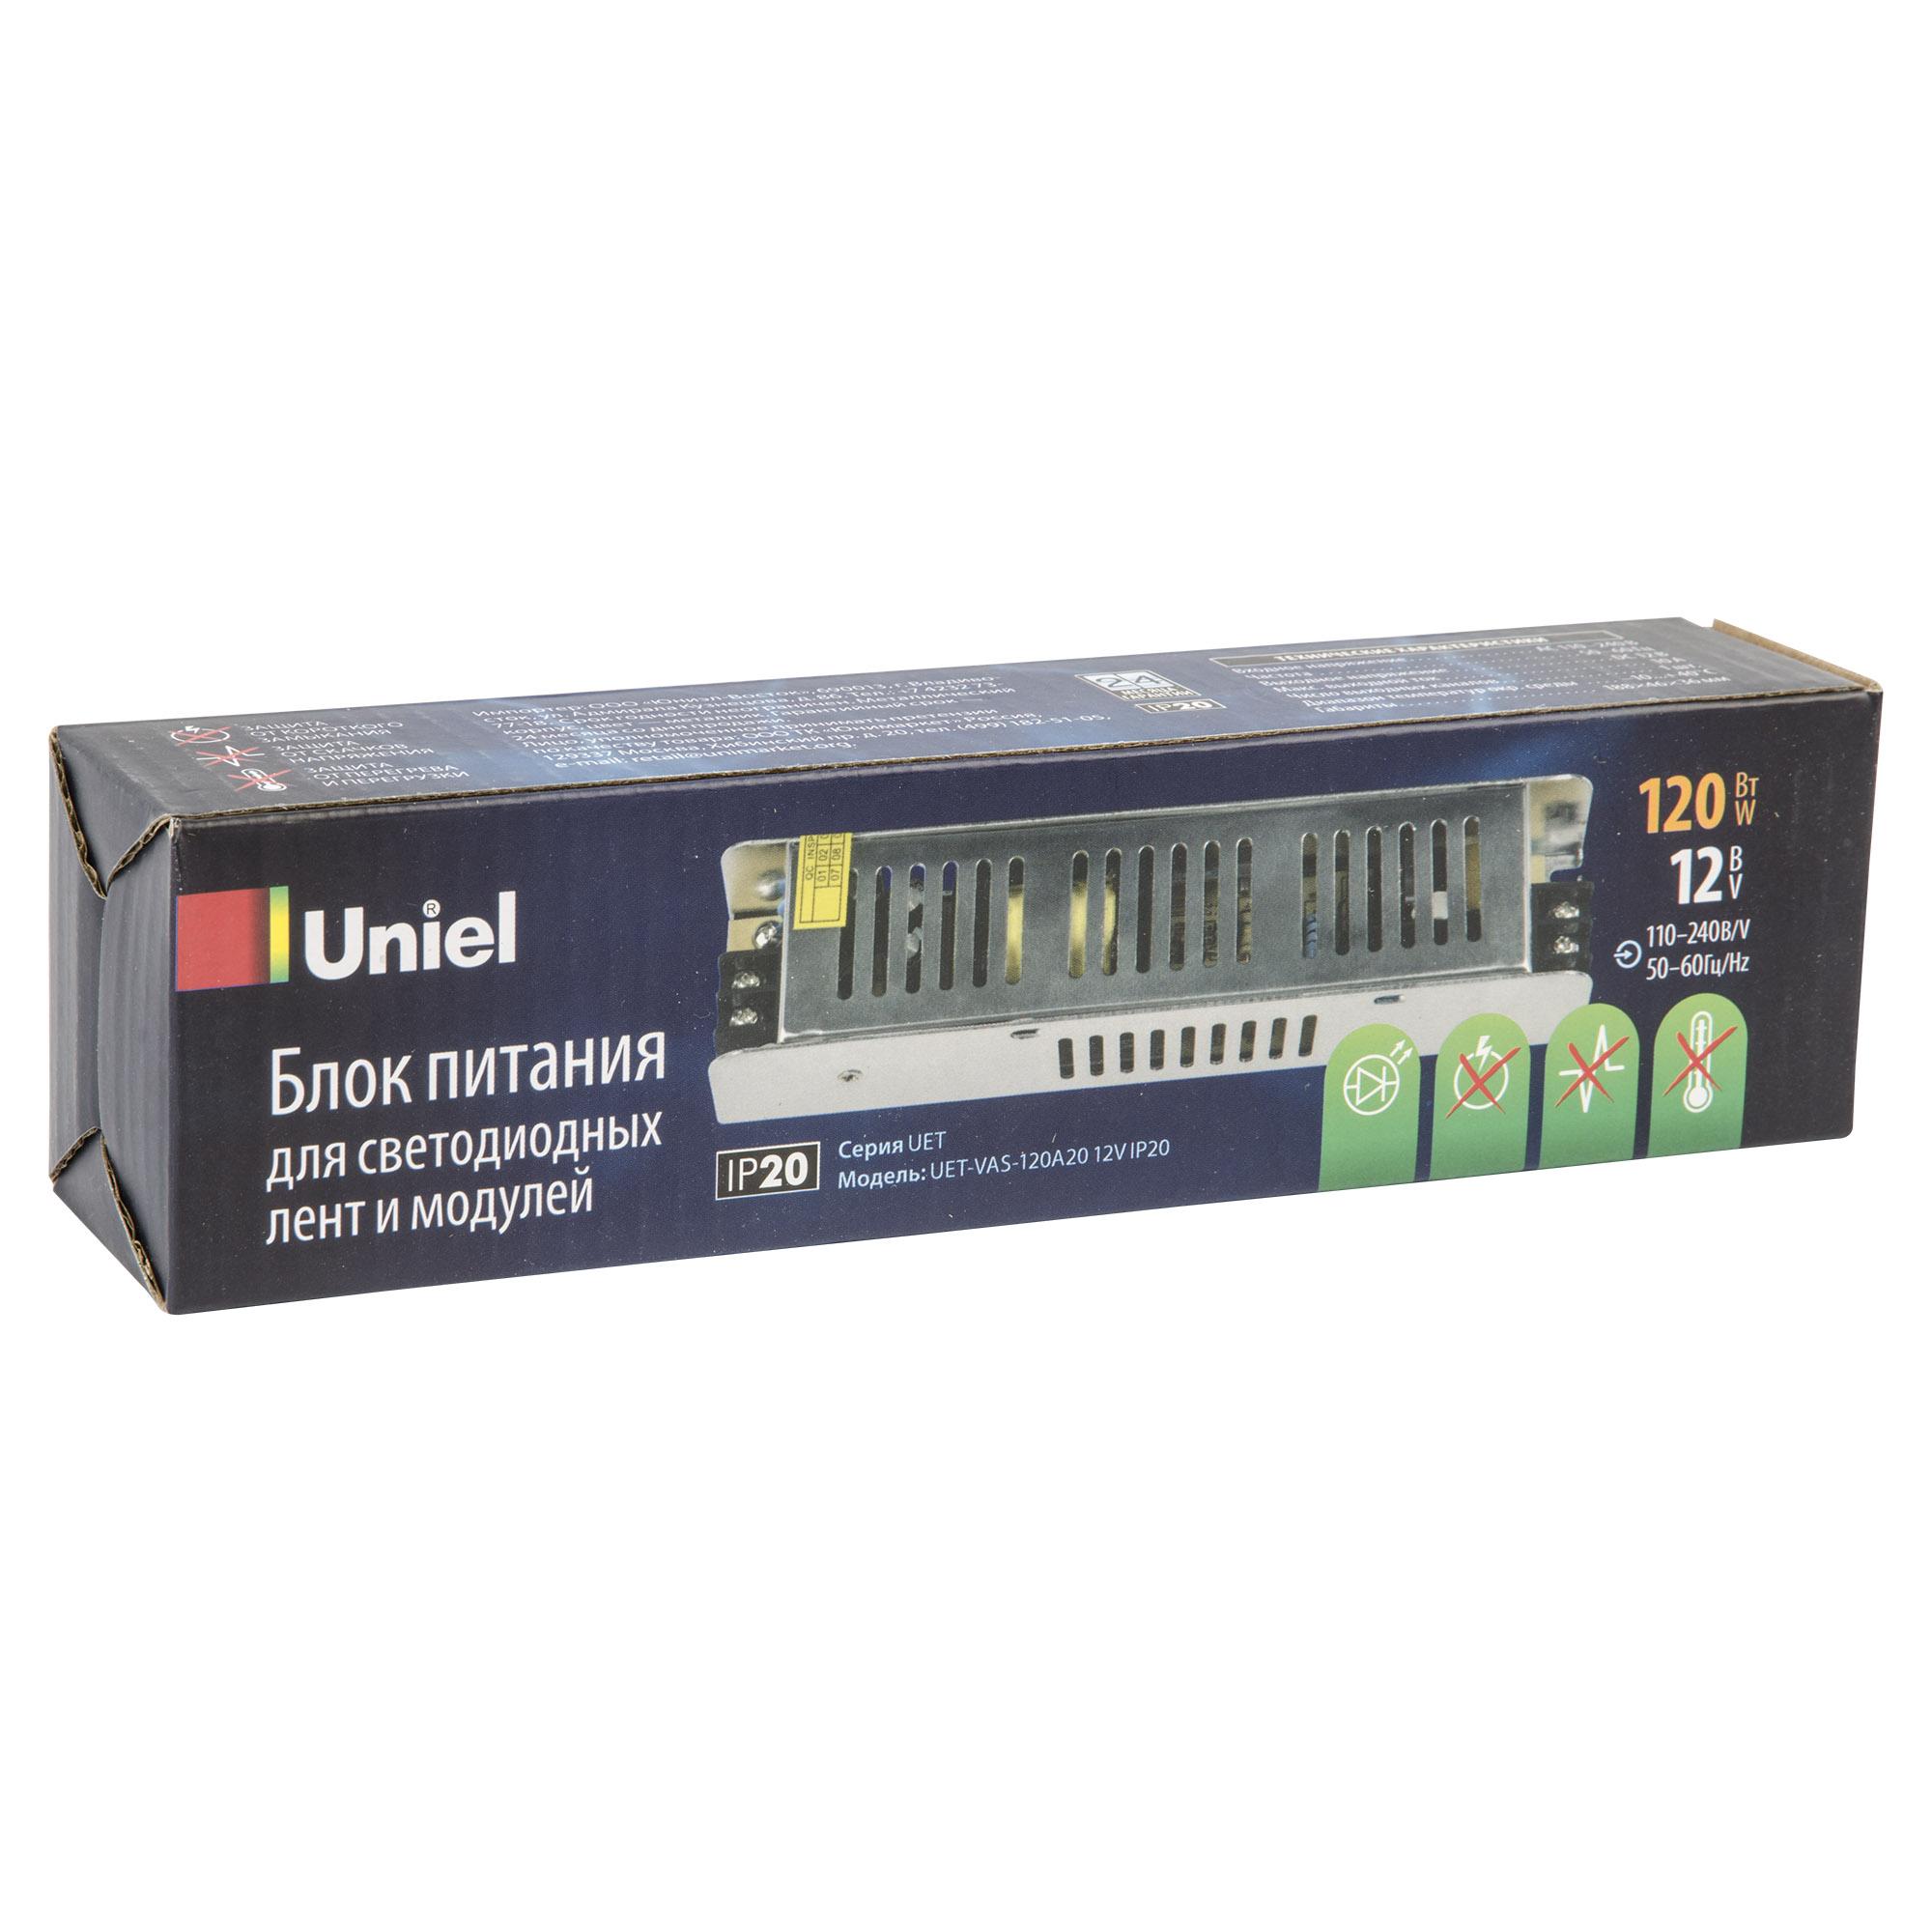 Блок питания Uniel UET-VAS-120A20 12V IP20 UL-00002430